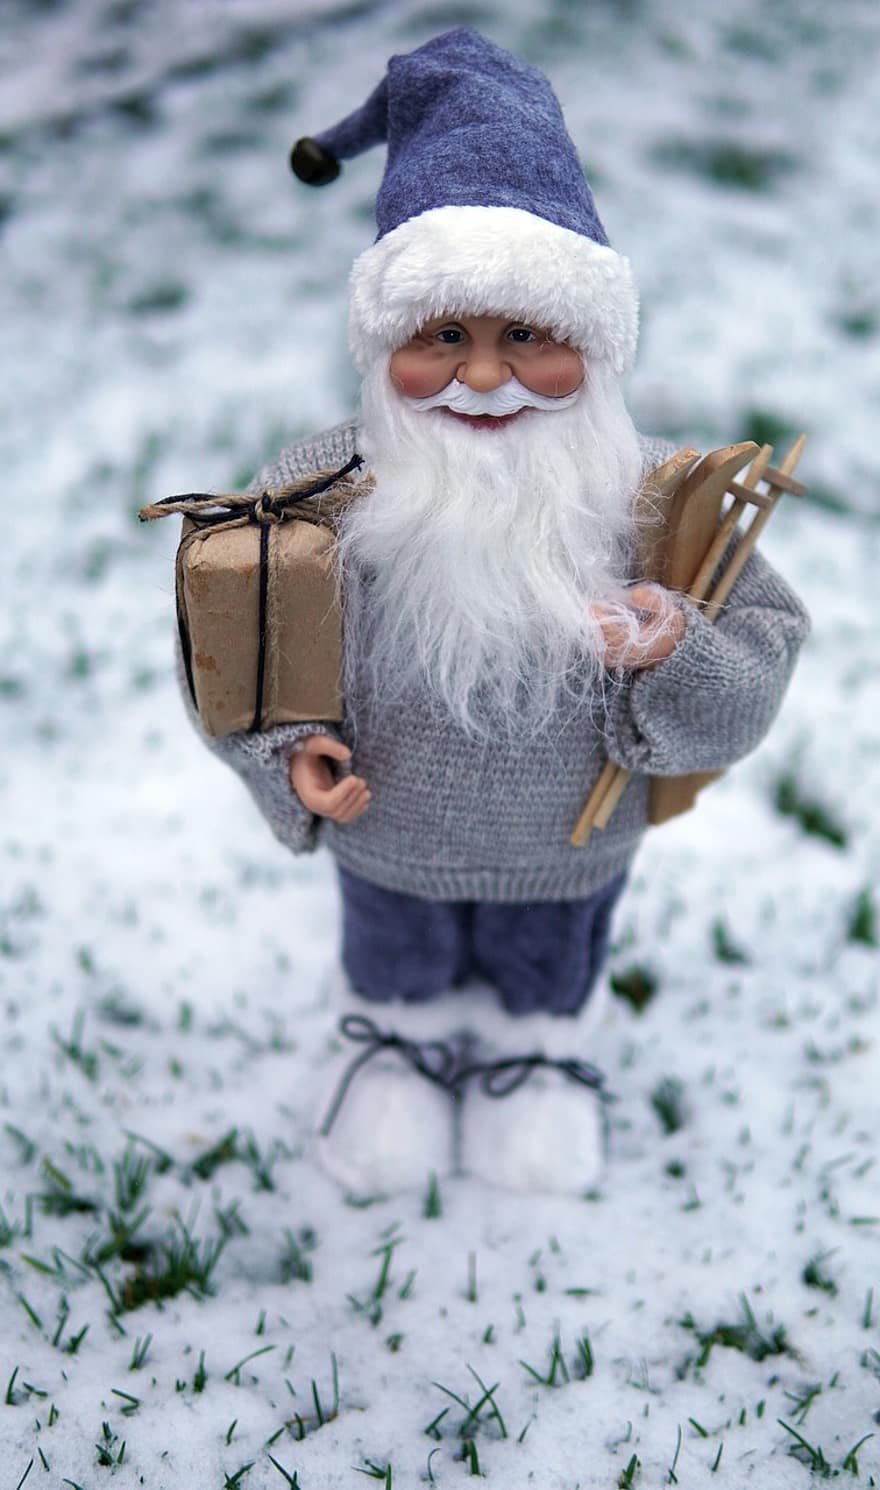 Babbo Natale, Natale, la neve, inverno, Santa, decorazione, regalo, sciare, Nicholas, freddo, maglione